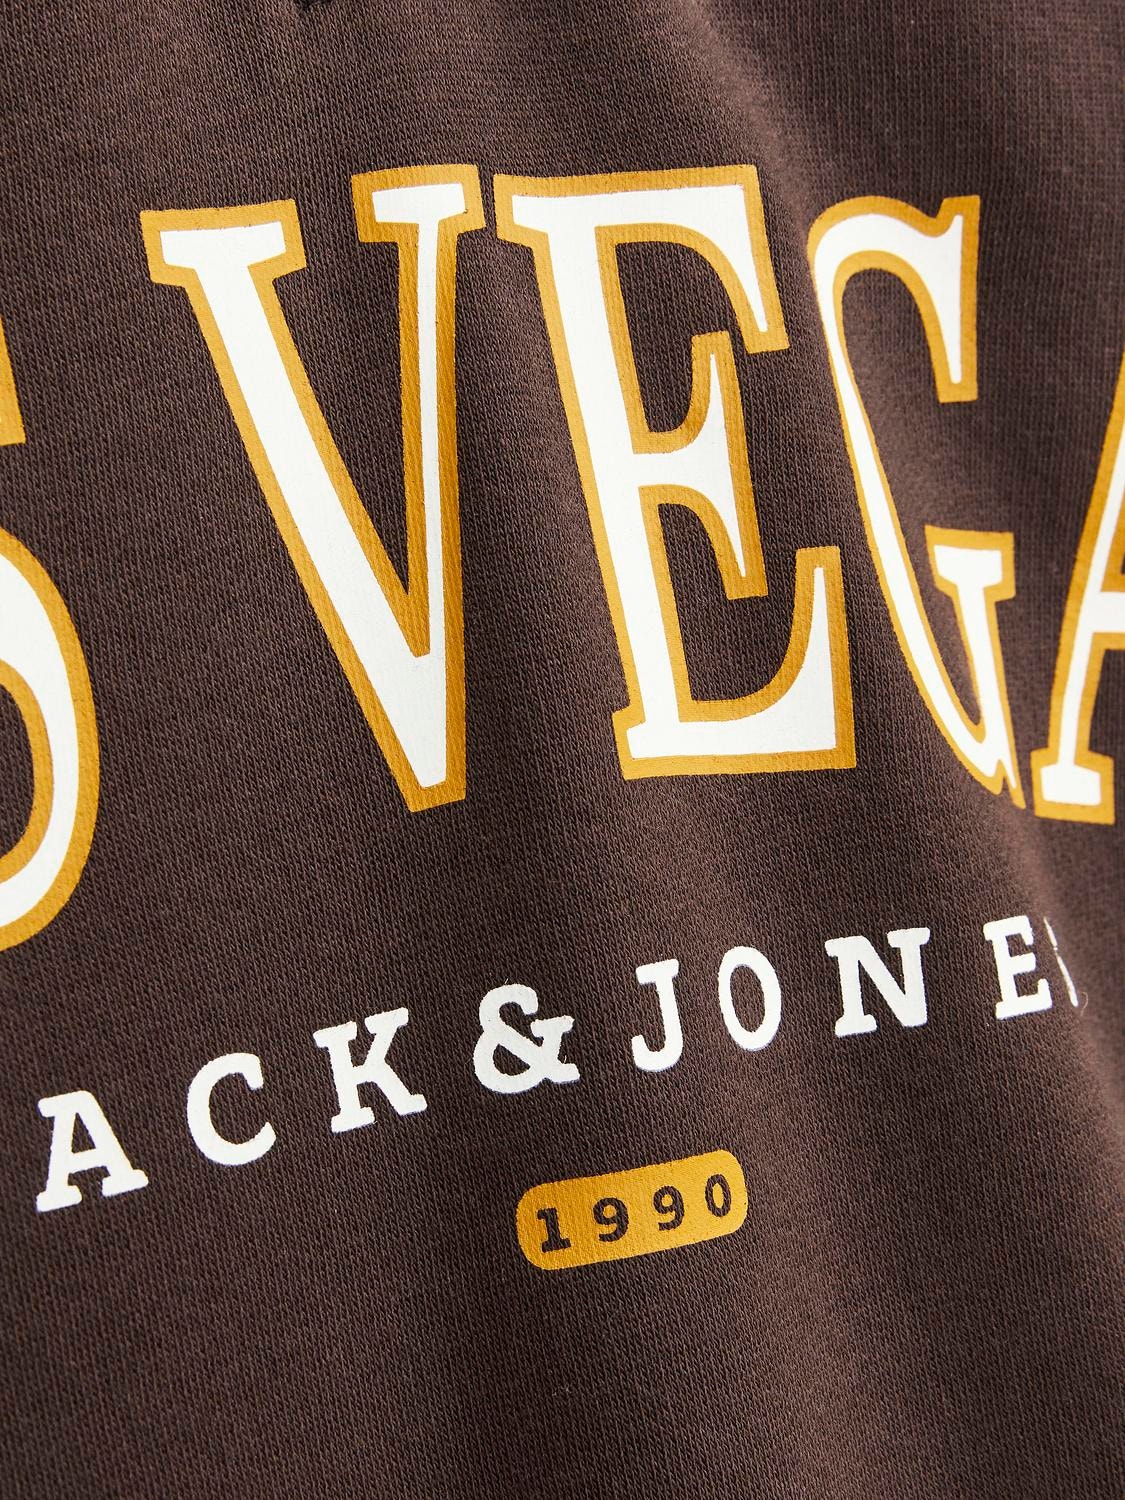 Jack & Jones Gedruckt Sweatshirt mit halbem Reißverschluss -Seal Brown - 12257392